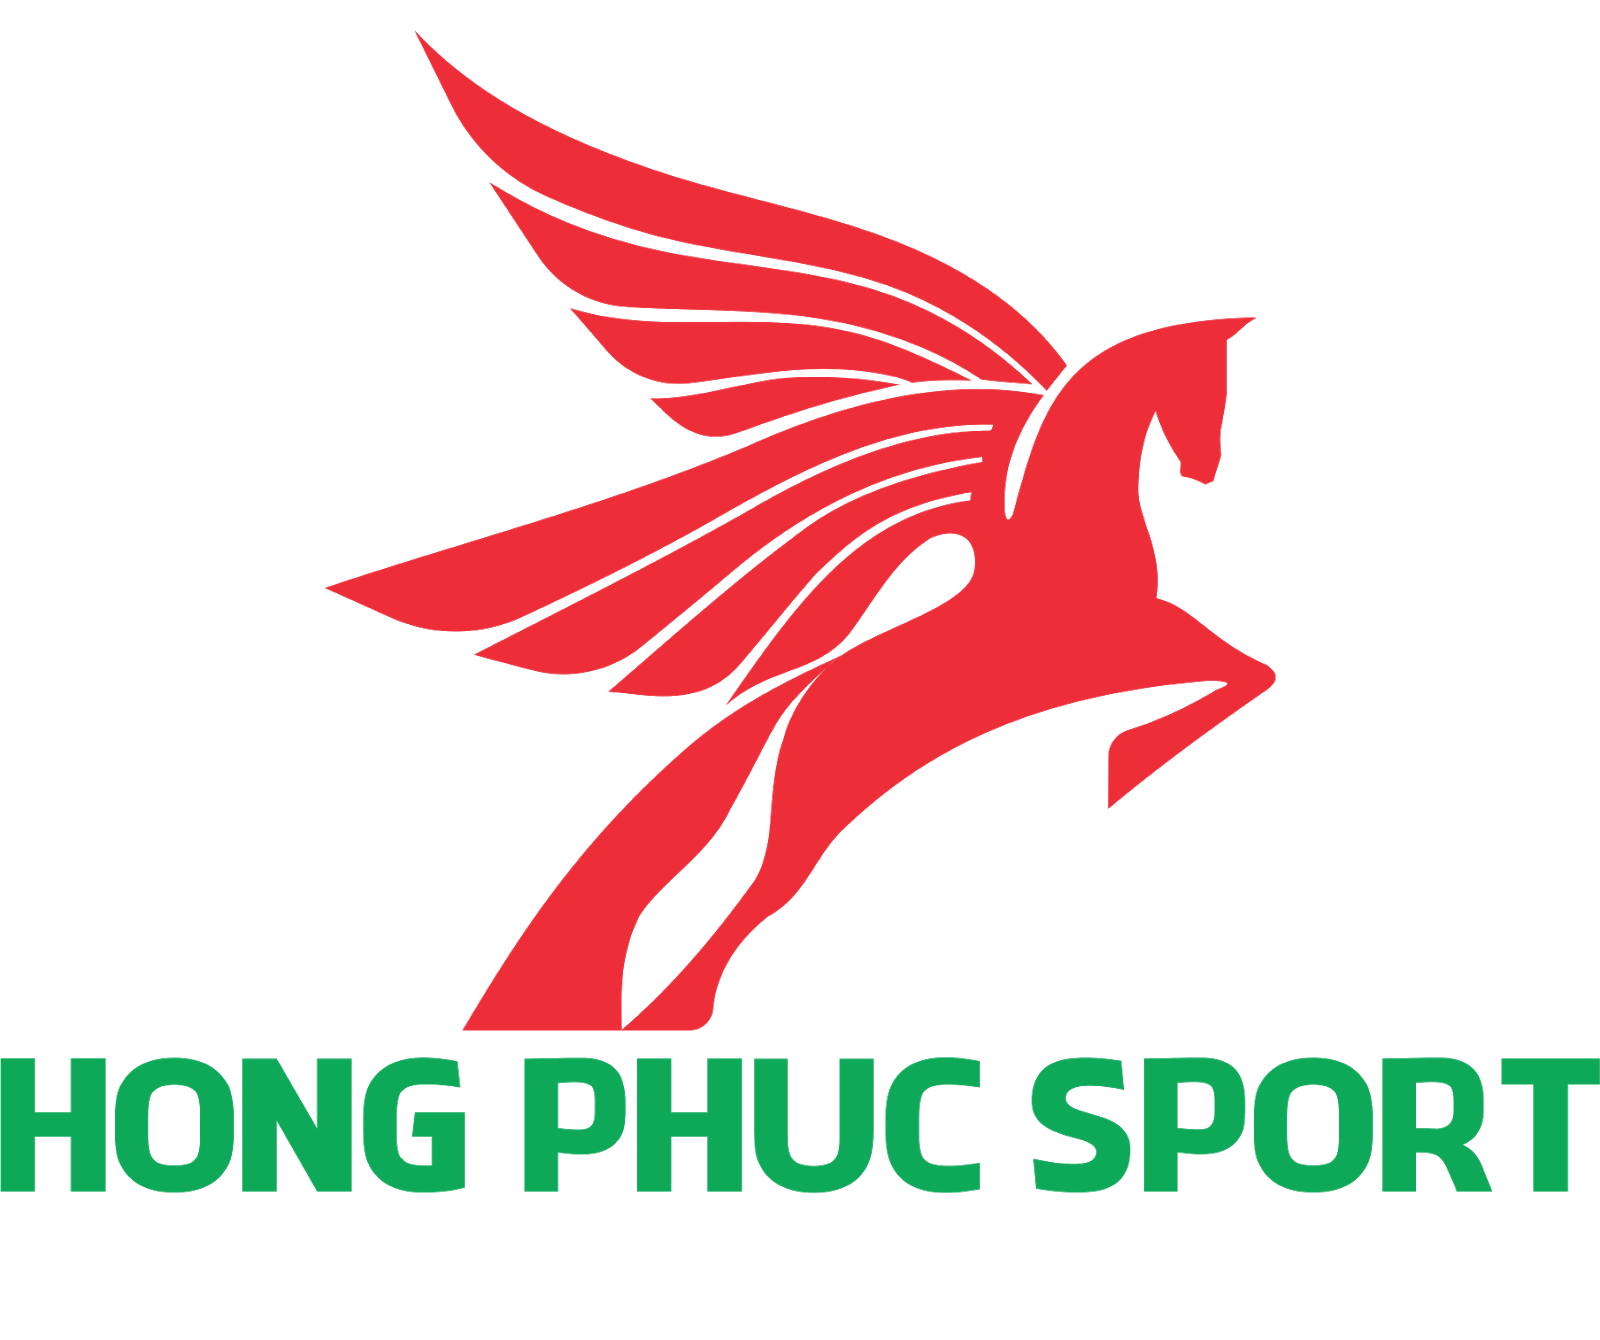 HONG PHUC SPORT